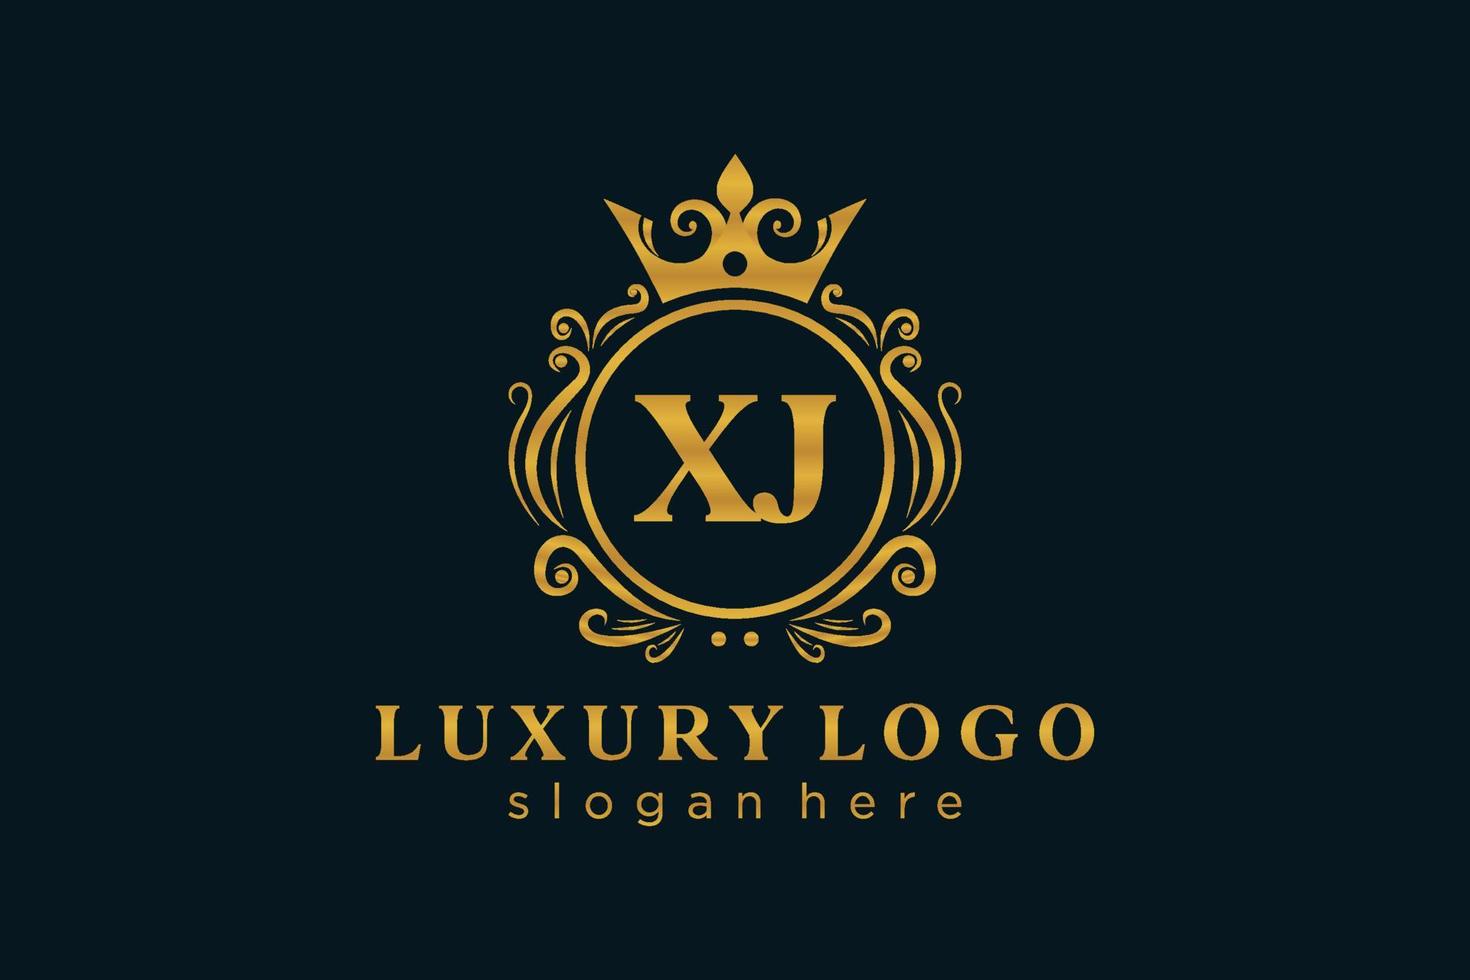 modèle initial de logo de luxe royal de lettre xj dans l'art vectoriel pour le restaurant, la royauté, la boutique, le café, l'hôtel, l'héraldique, les bijoux, la mode et d'autres illustrations vectorielles.